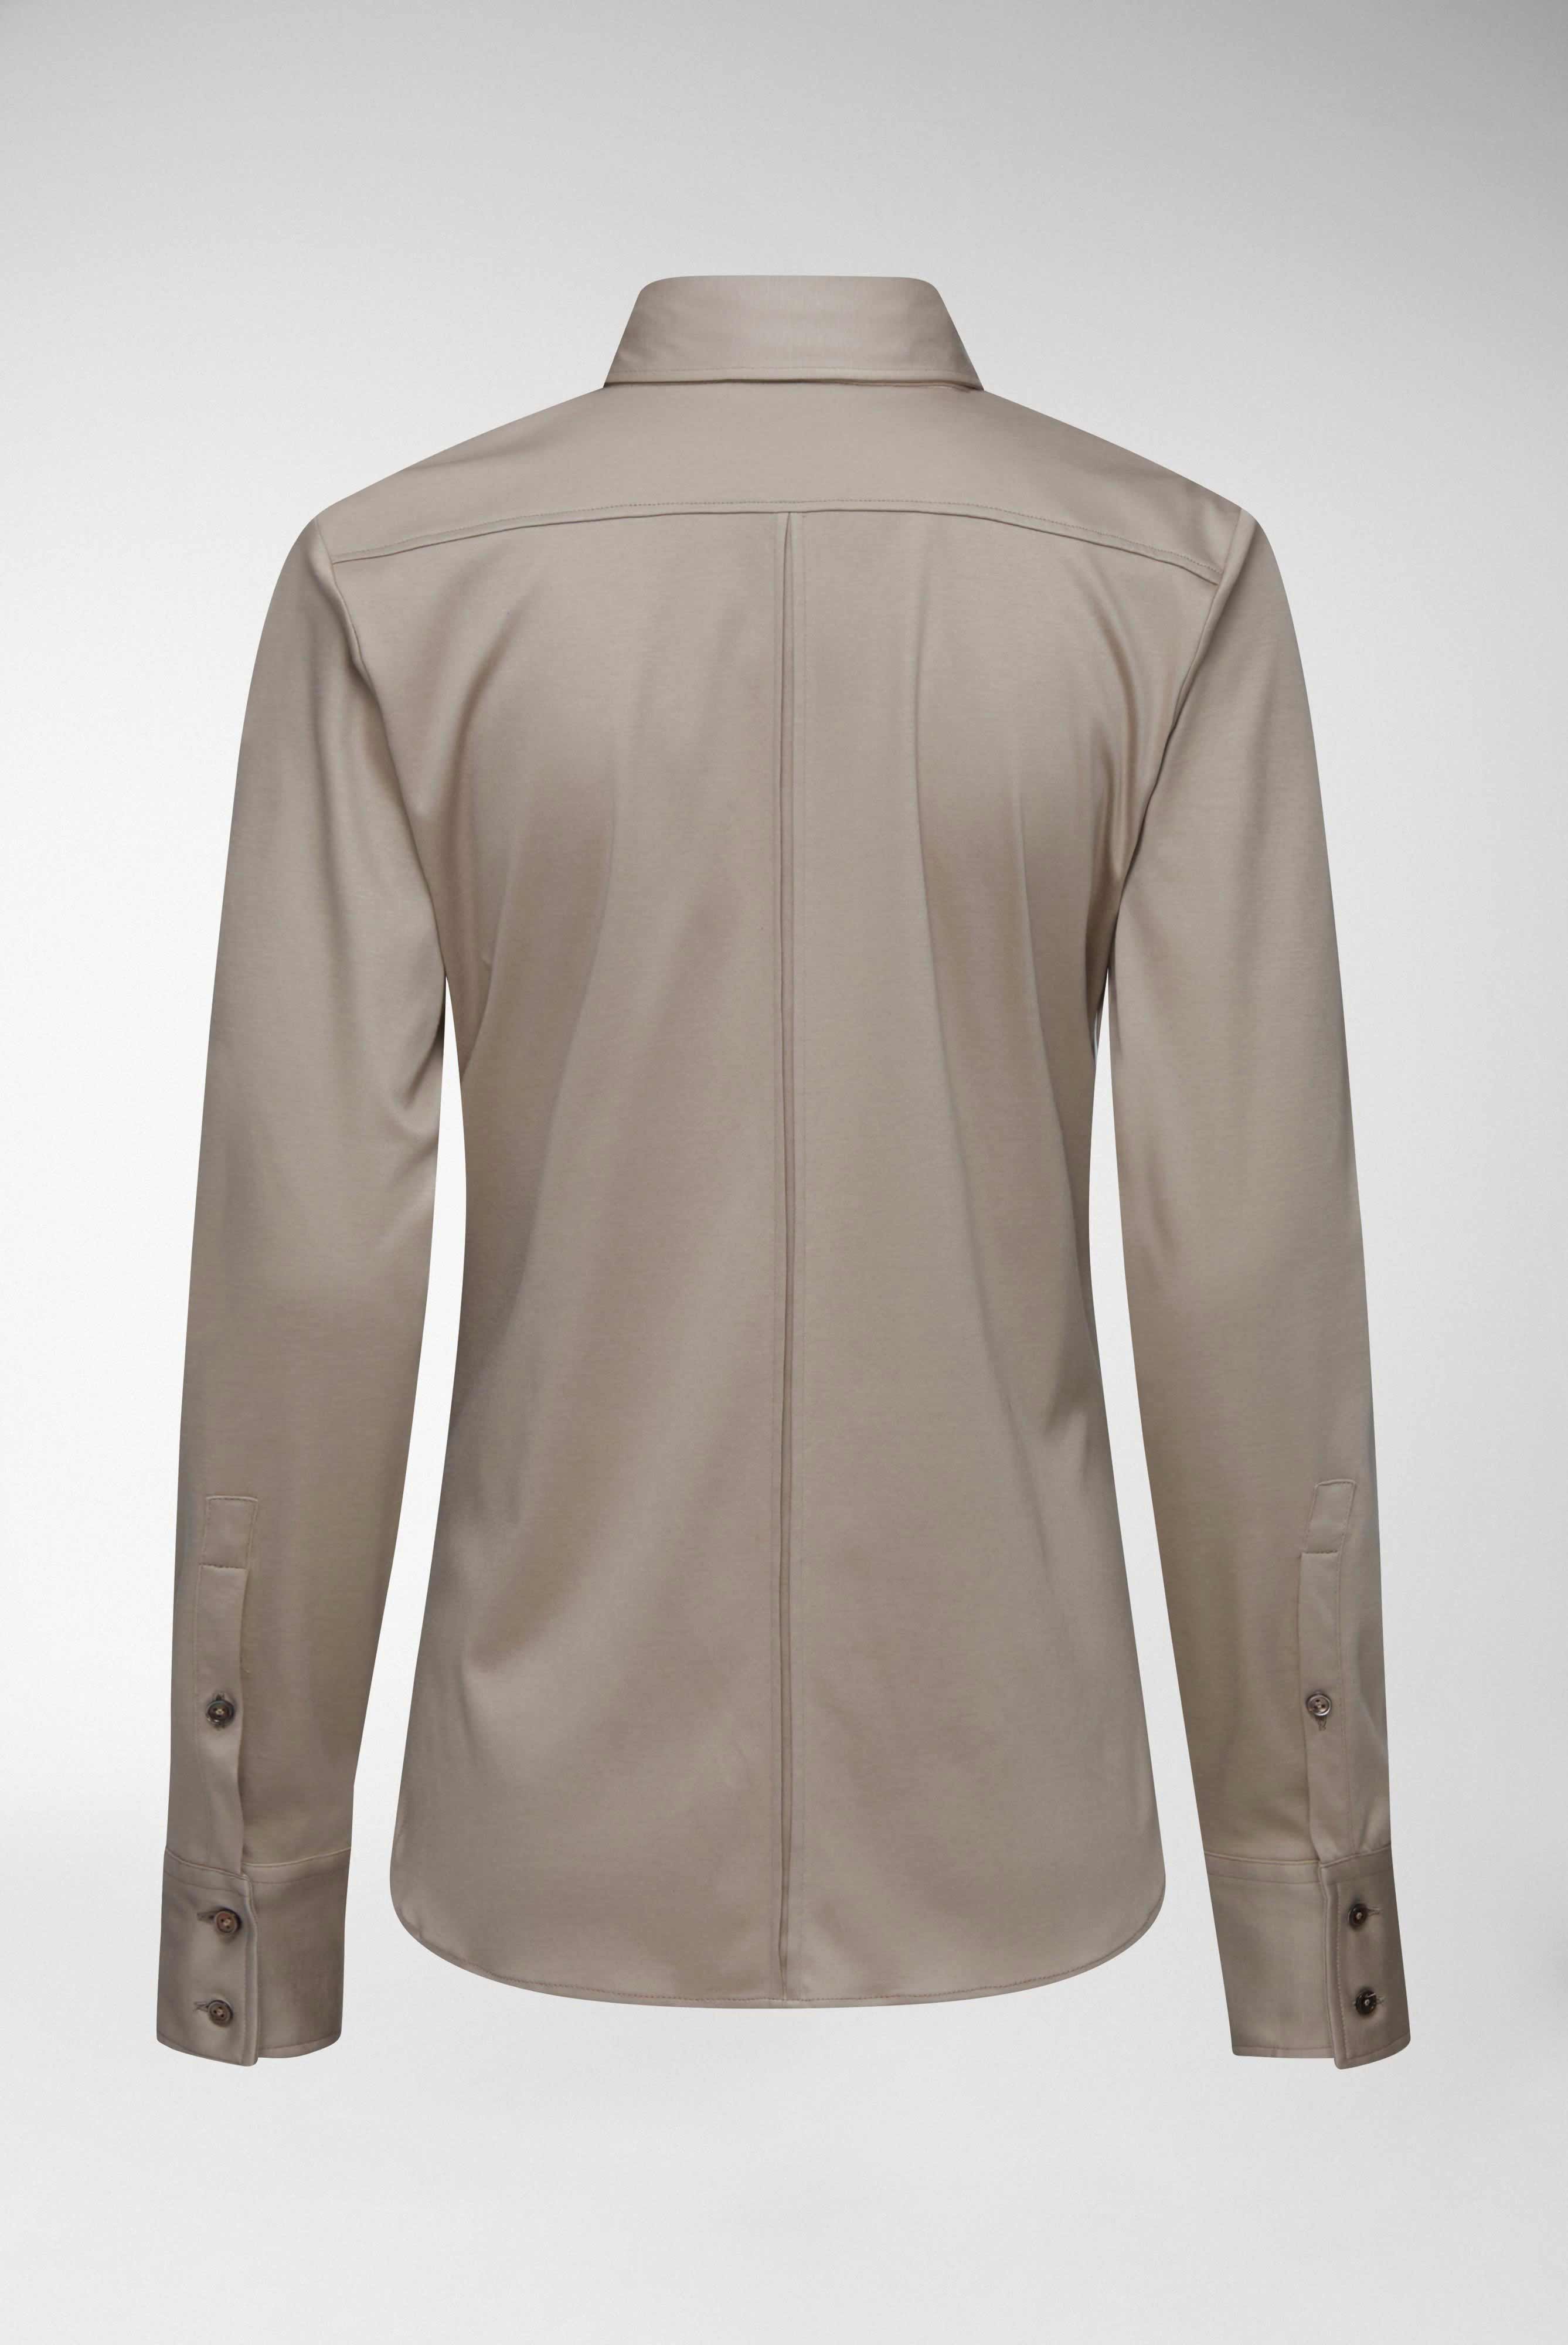 Casual Blusen+Taillierte Jersey Hemdbluse aus Schweizer Baumwolle+05.603Y..180031.140.46